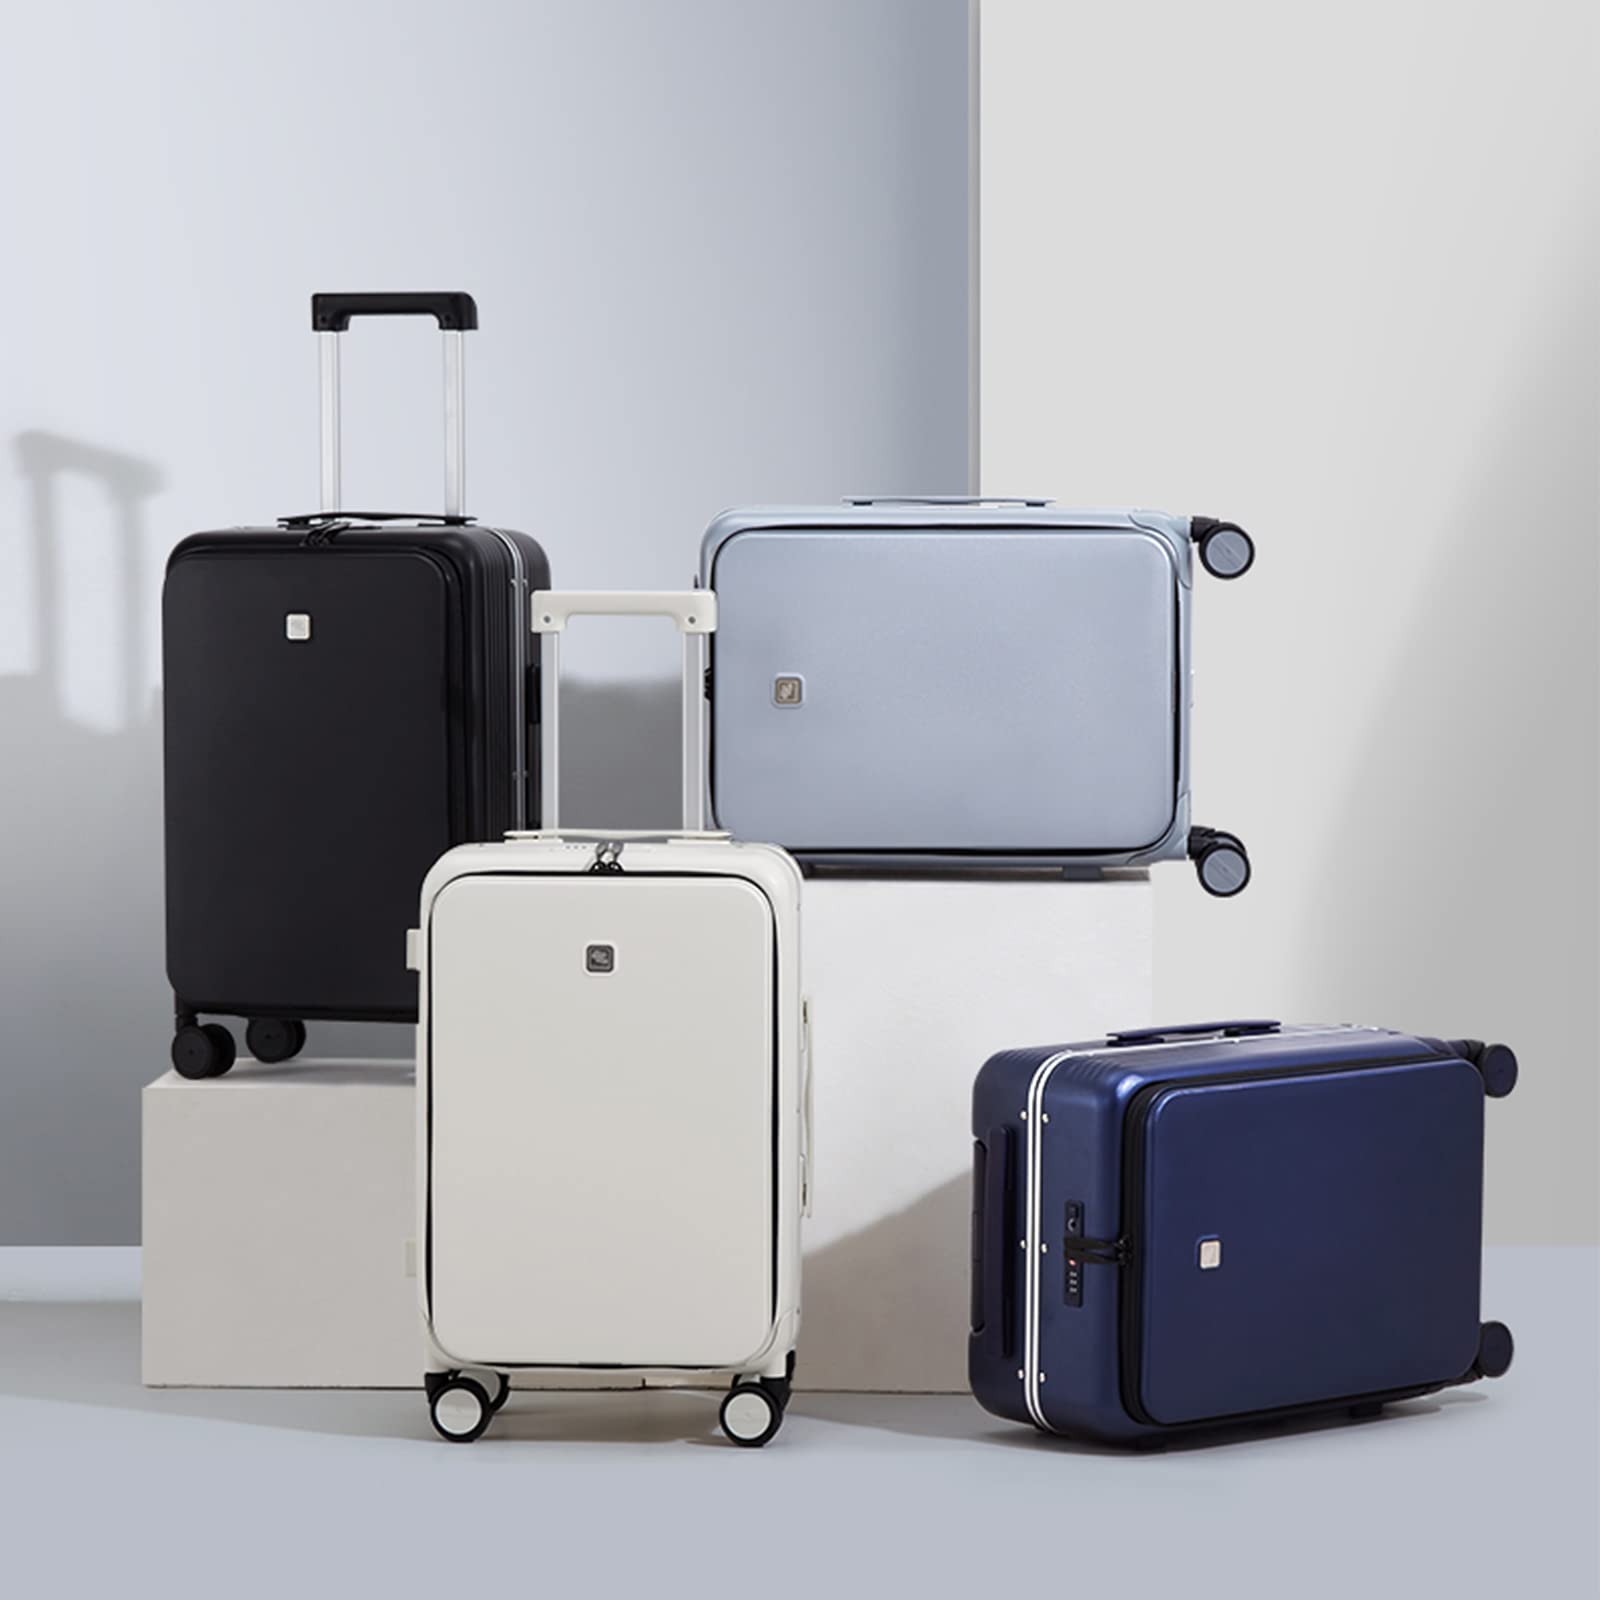 リアル Hanke Carry On Luggage, Suitcase with Wheels Front Opening, 20in Spinner  Luggage Built in TSA Aluminum Frame PC Hardside Rolling Suitcase並行輸入品 